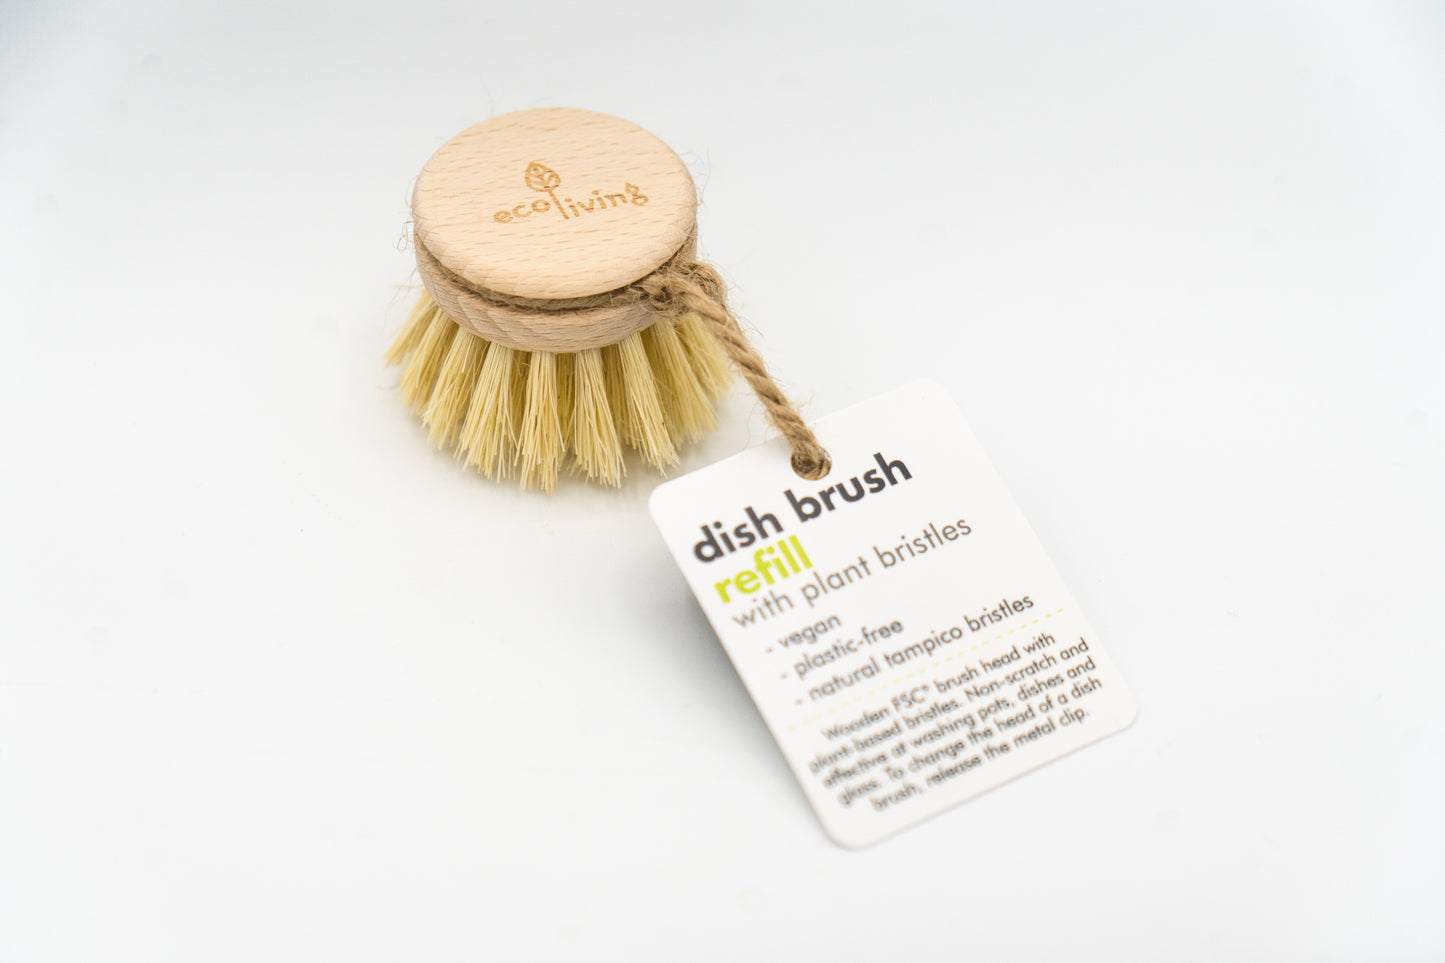 replaceable compostable biodegradable exchangeable dishbrush head plant bristles eco-friendly shop bollington macclesfield